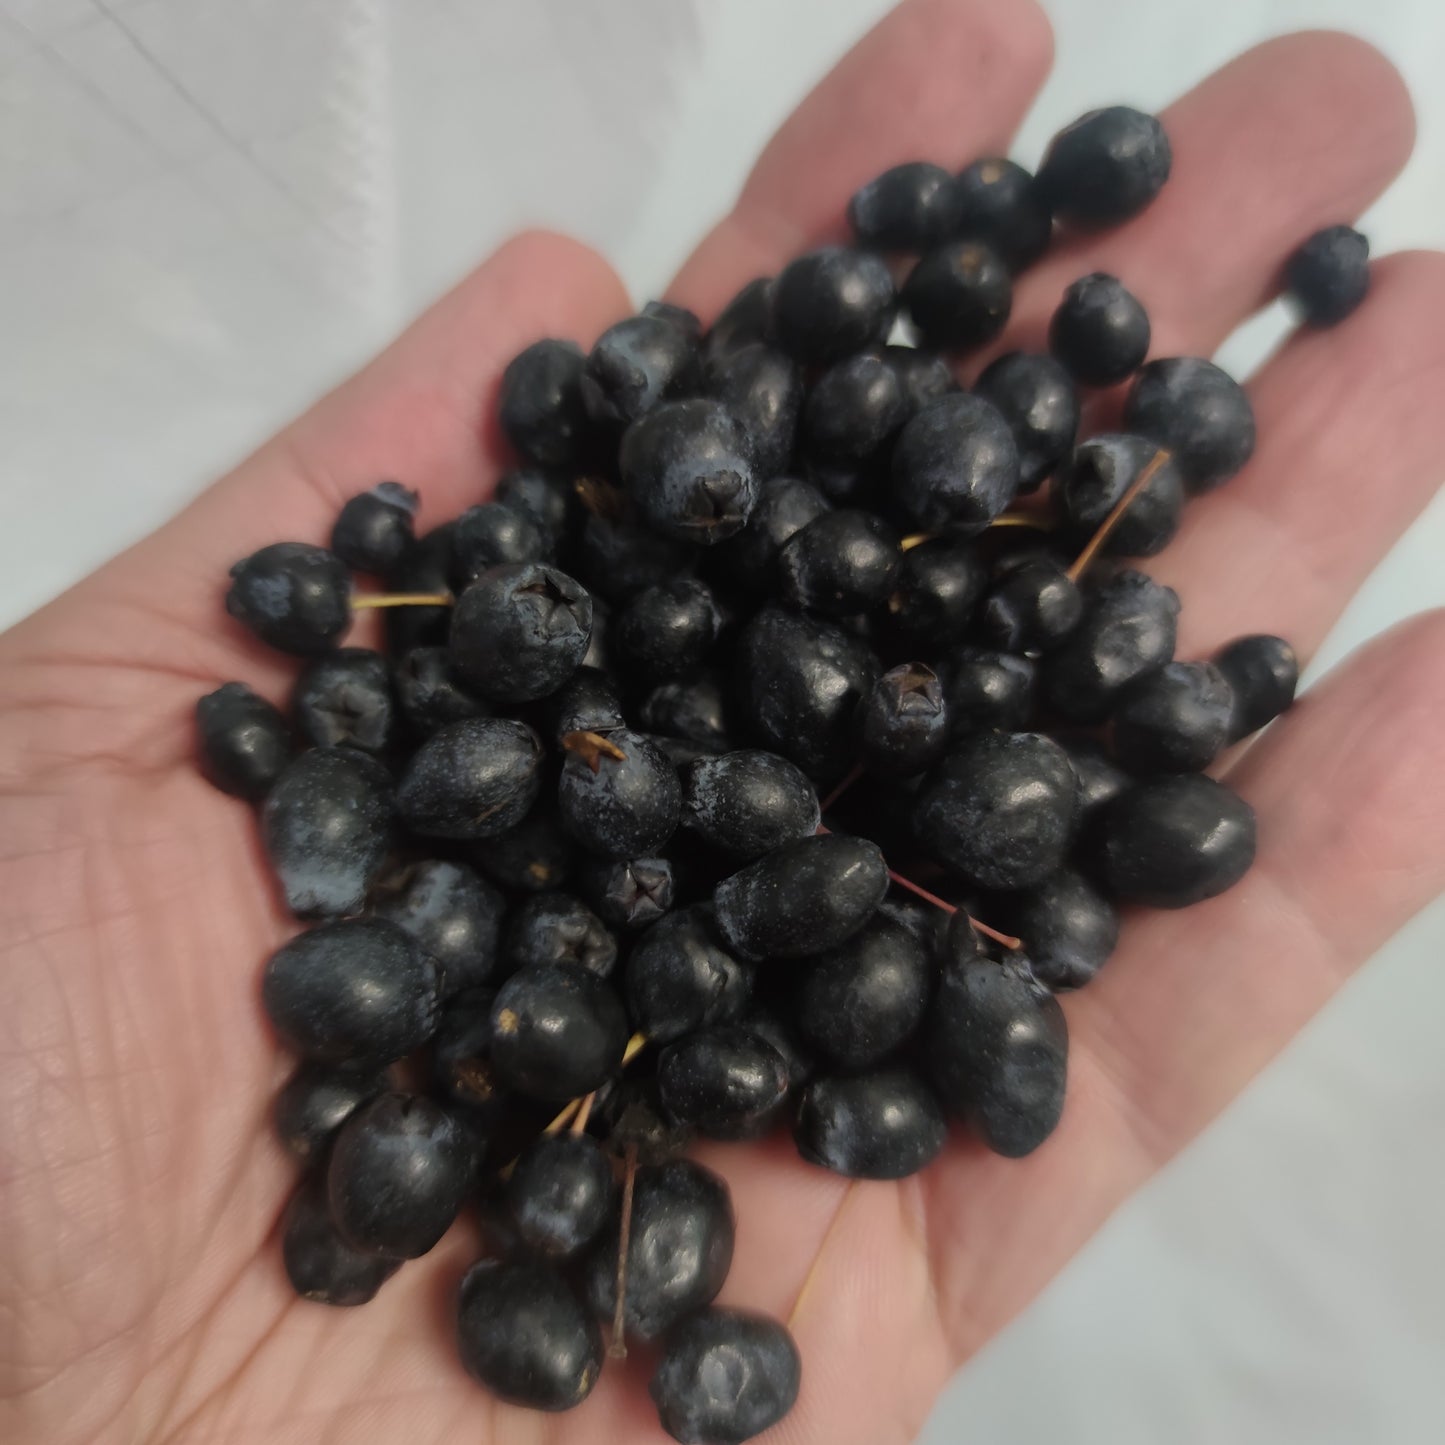 Baies fraîches de myrte noir sarde (myrtus communis) dans un emballage alimentaire [ PRÉCOMMANDE ]